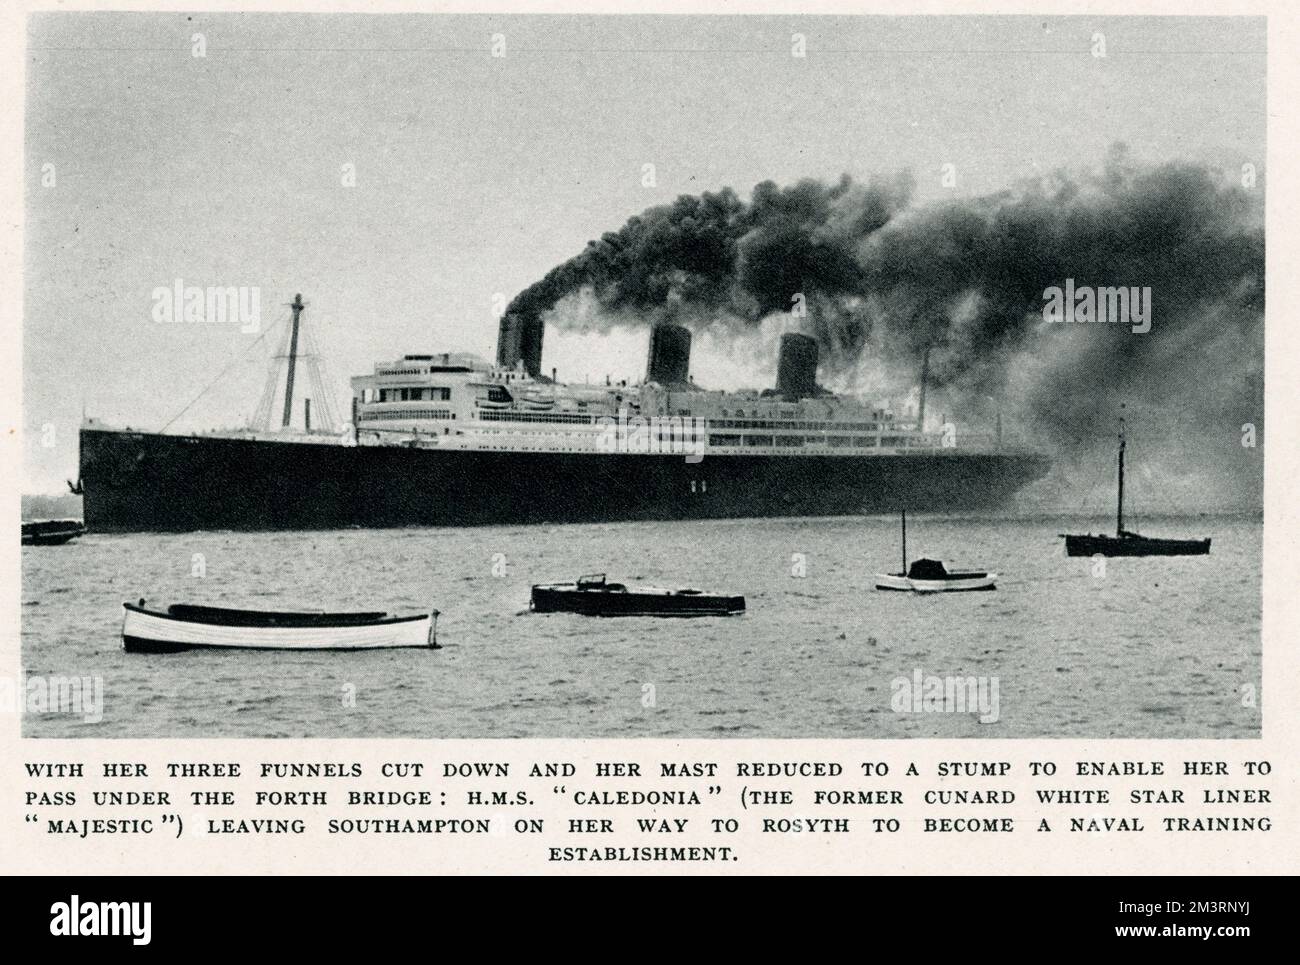 L'ex marinaio Cunard White Star Liner 'Majestic', cambiato in 'H.M.S Caledonia', fu acquistato nel 1937 dall'Ammiragliato e fu convertito, al costo di £391.333 dollari, in una nave da addestramento per ragazzi artefici che divennero marinai o ingegneri navali. Tre degli imbuti erano accorciati e il suo palo si riduceva a un moncone per consentirle di passare sotto il quarto ponte ferroviario. Il capitano Atwell Lake fu nominato per comandare la nave, che era stazionata nel bacino di Rosyth. Foto qui mostrata, il 8 aprile 1937, 'H.M.S Caledonia', partendo da Southampton sulla sua strada per Rosyth per diventare un centro di addestramento navale. Foto Stock